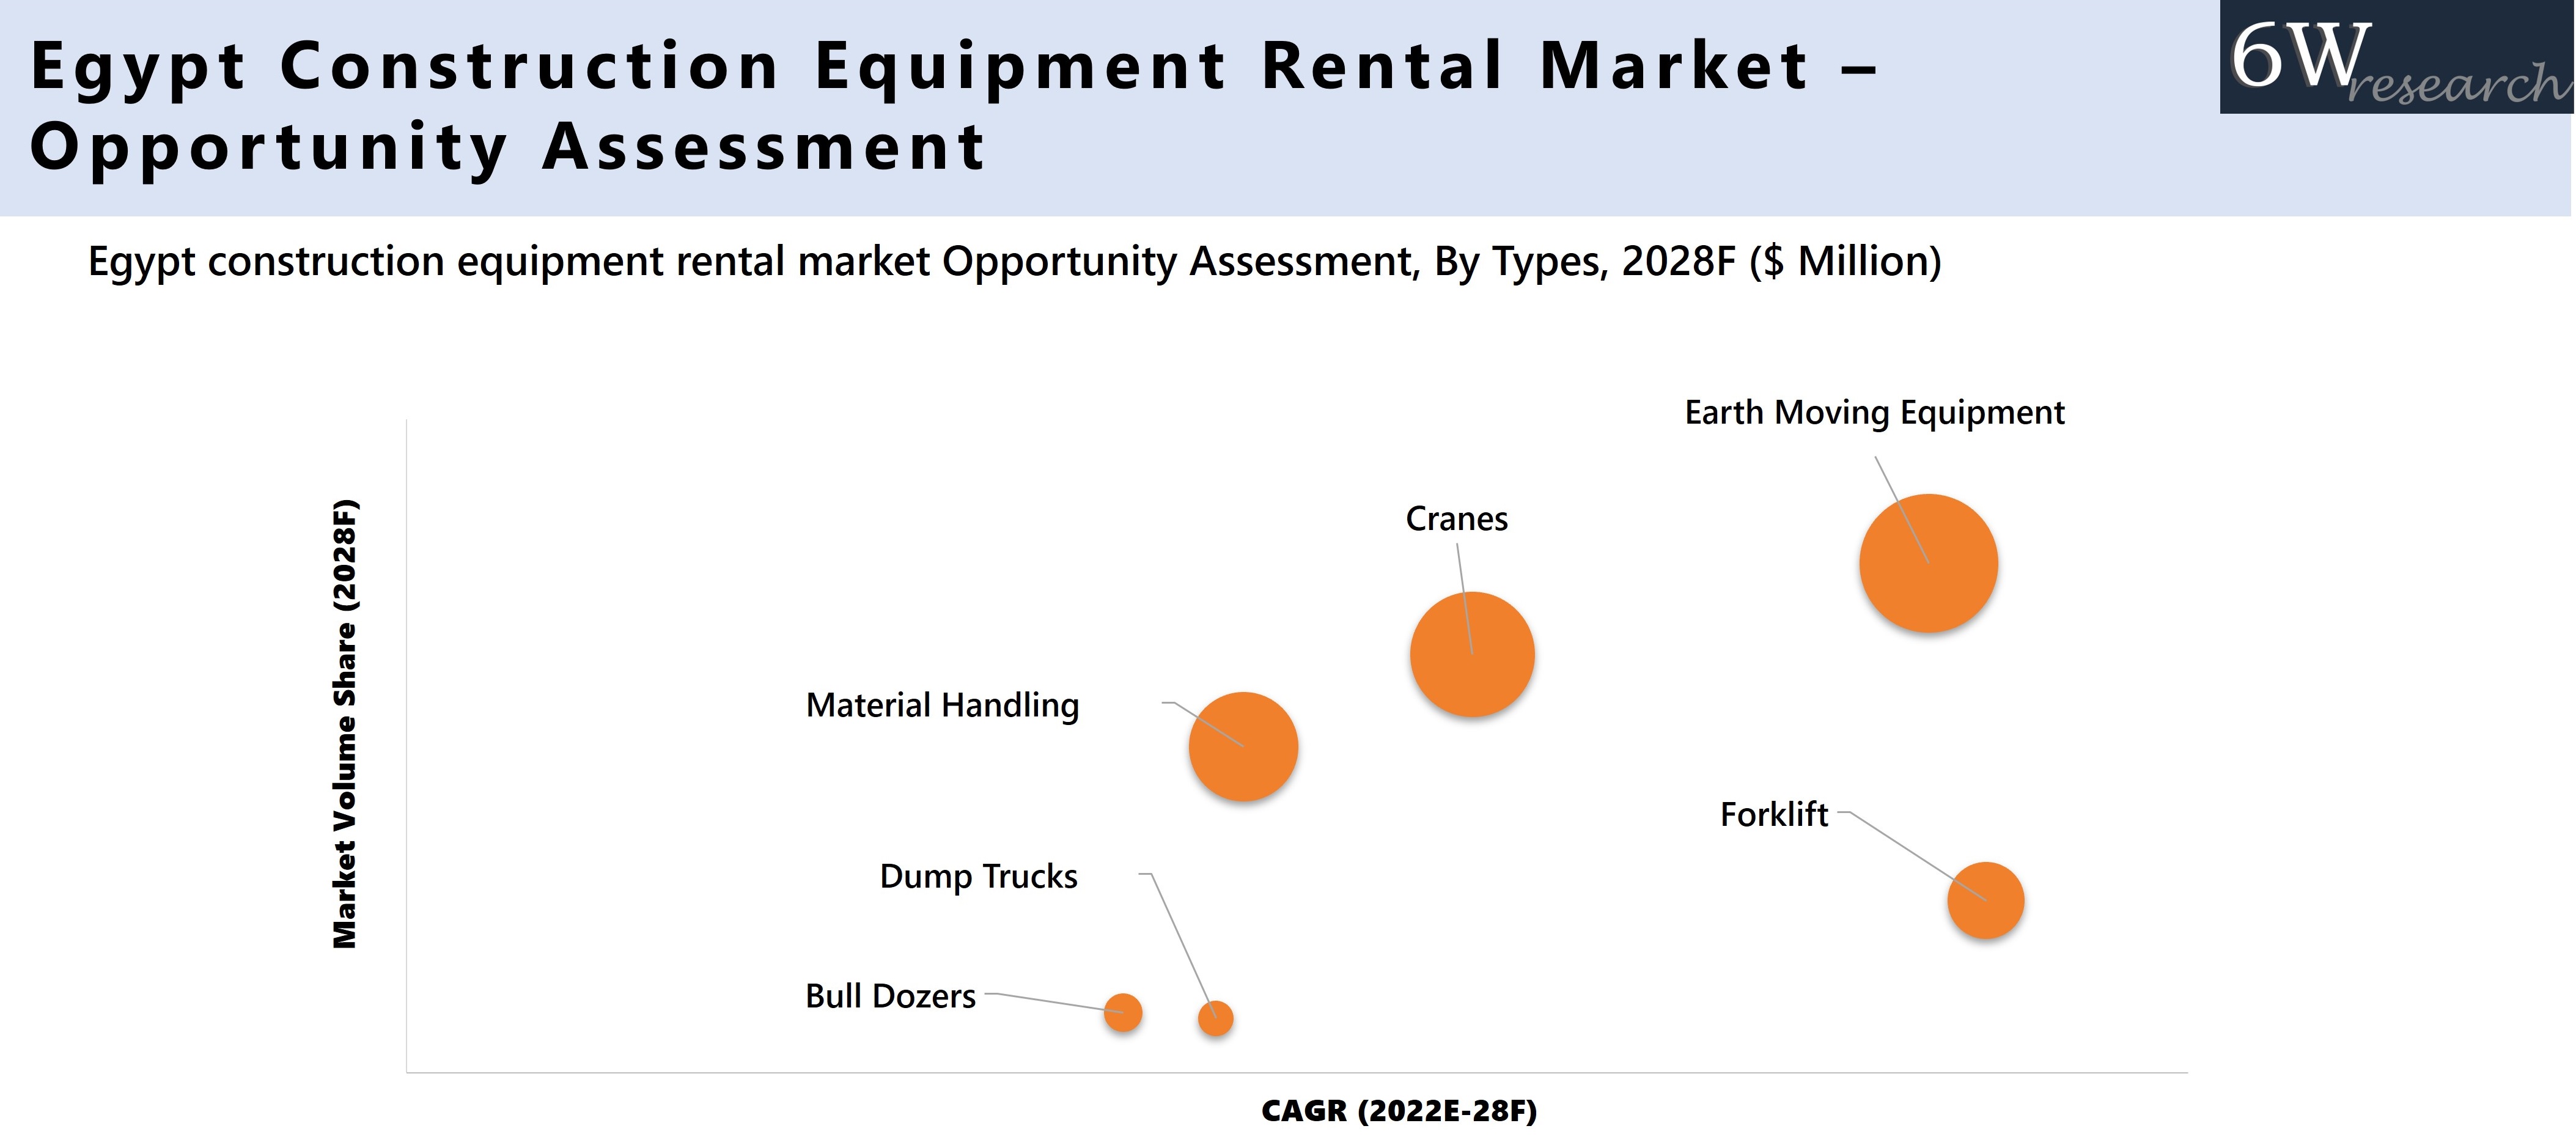 Egypt Construction Equipment Rental Market Opportunity Assessment